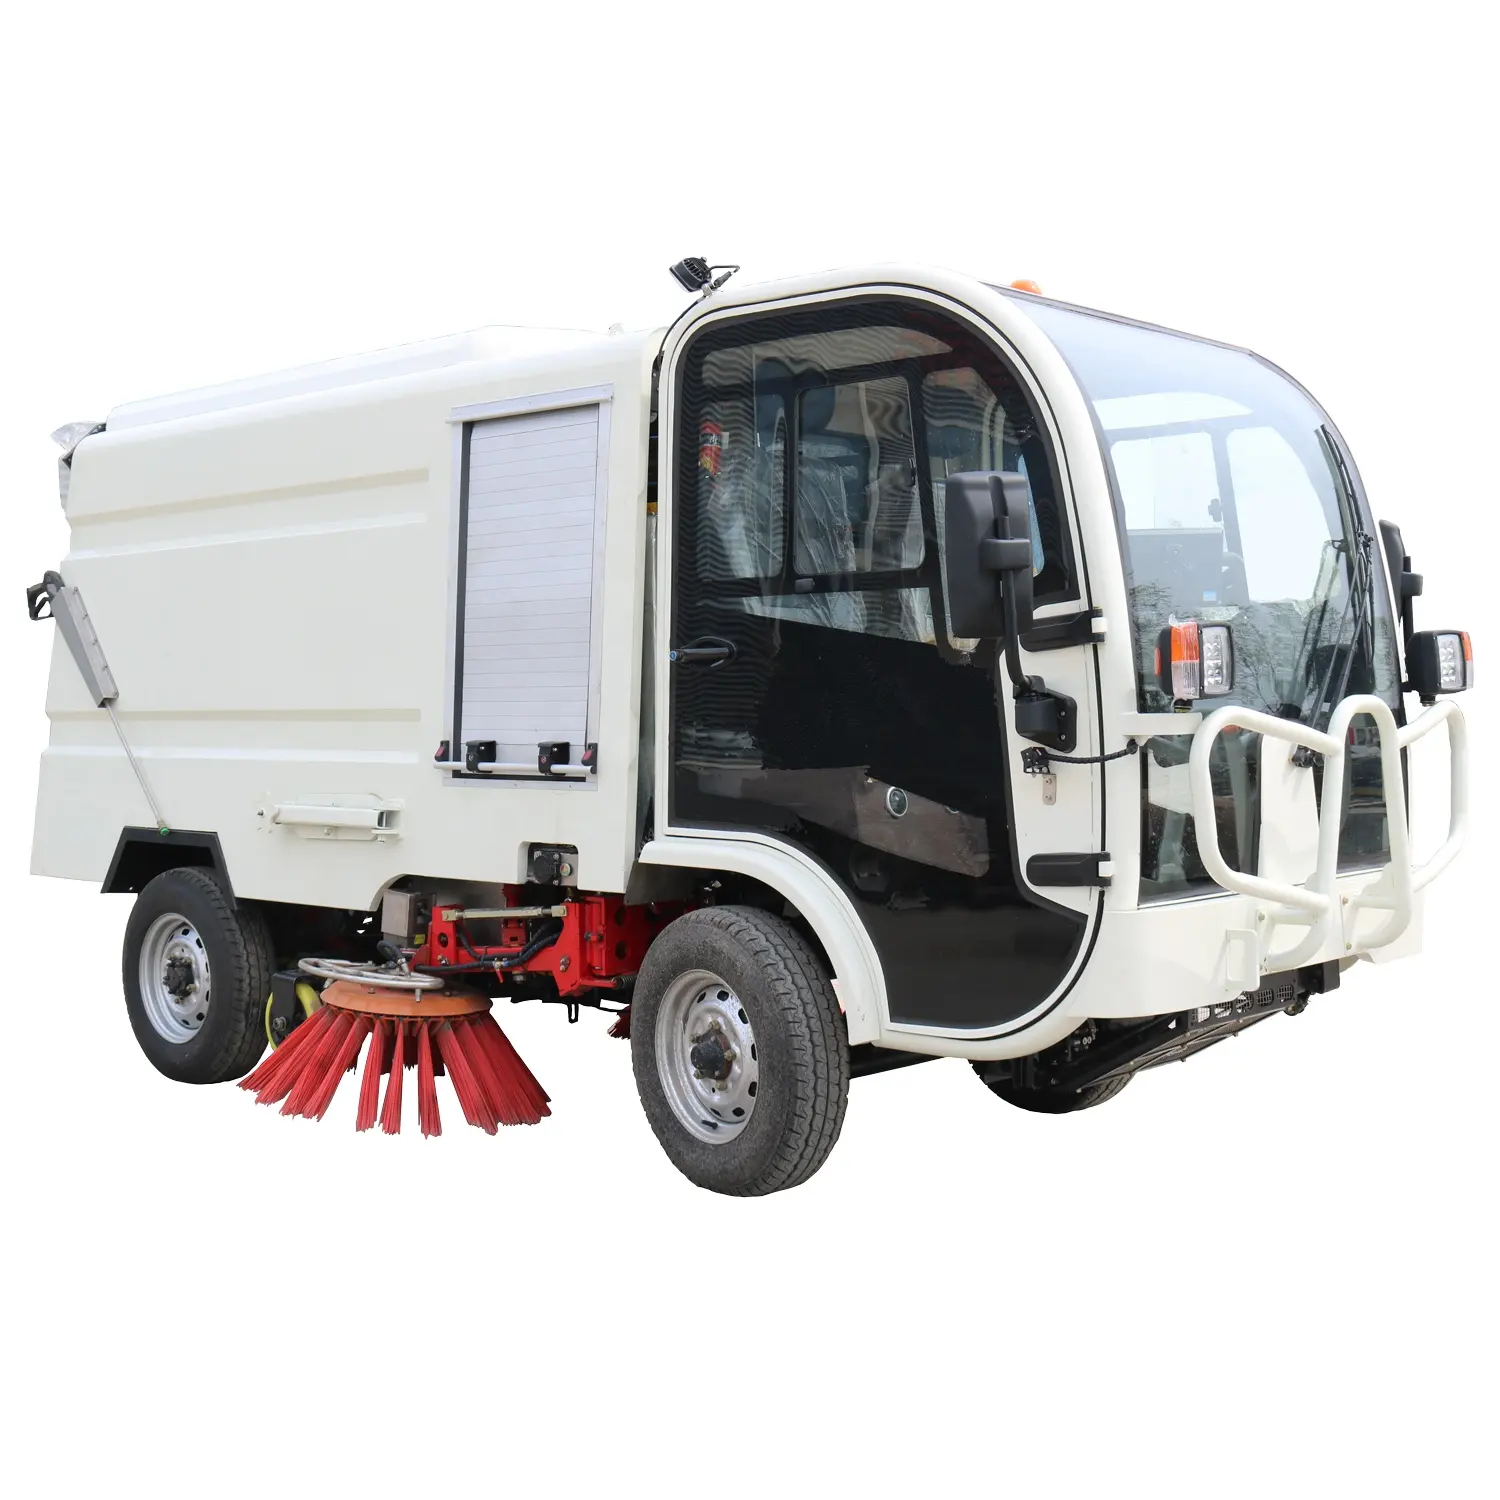 Keyu産業用掃除機トラックパーククリーニング電気道路スイーパーSanitationroadスイーパートラック